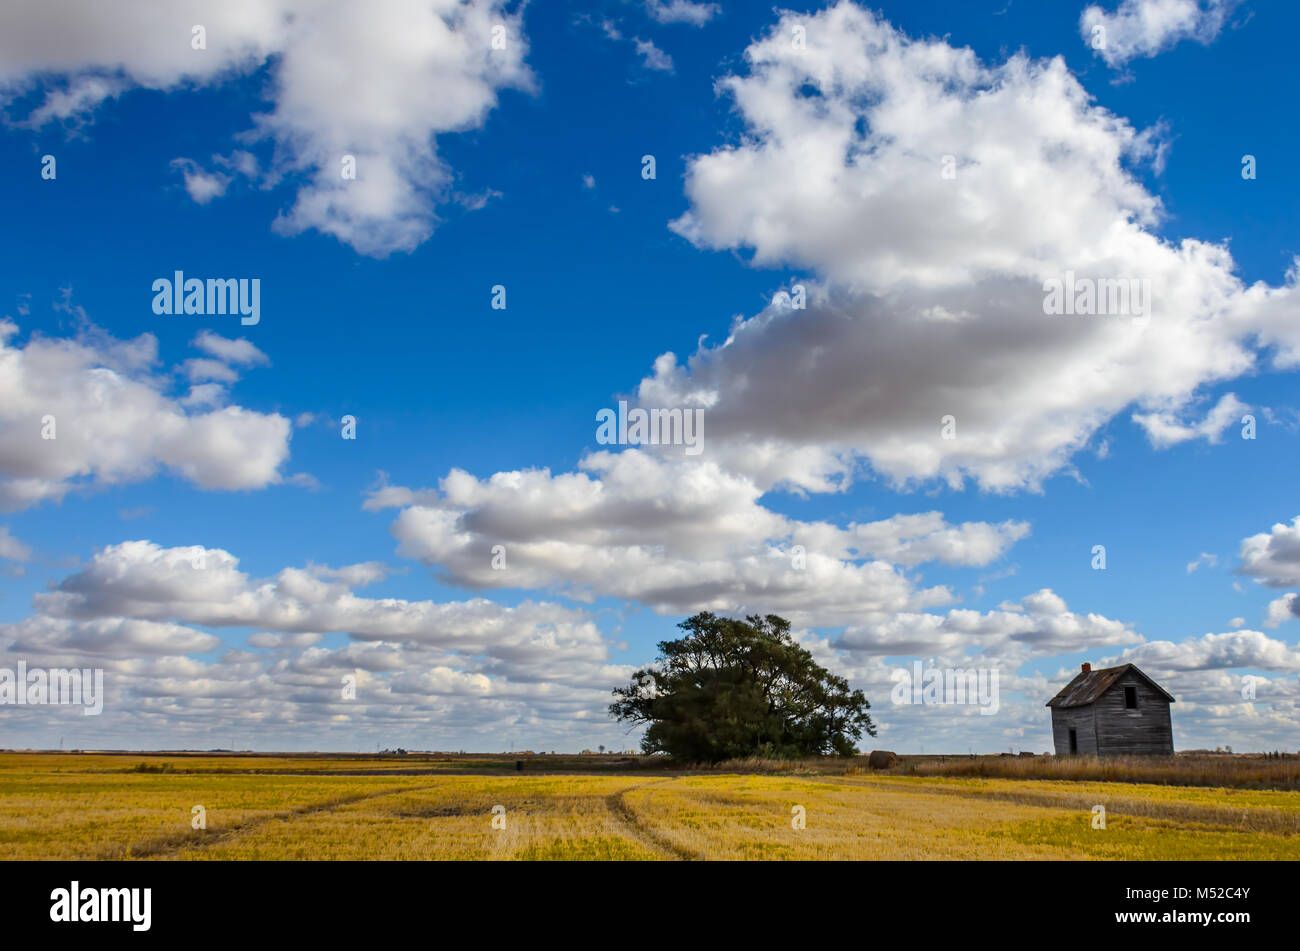 Lush, cumulus blanc contre le ciel bleu sur un champ avec un biseau jaune arbre vert, une meule et une vieille maison sur une claire journée d'été Banque D'Images